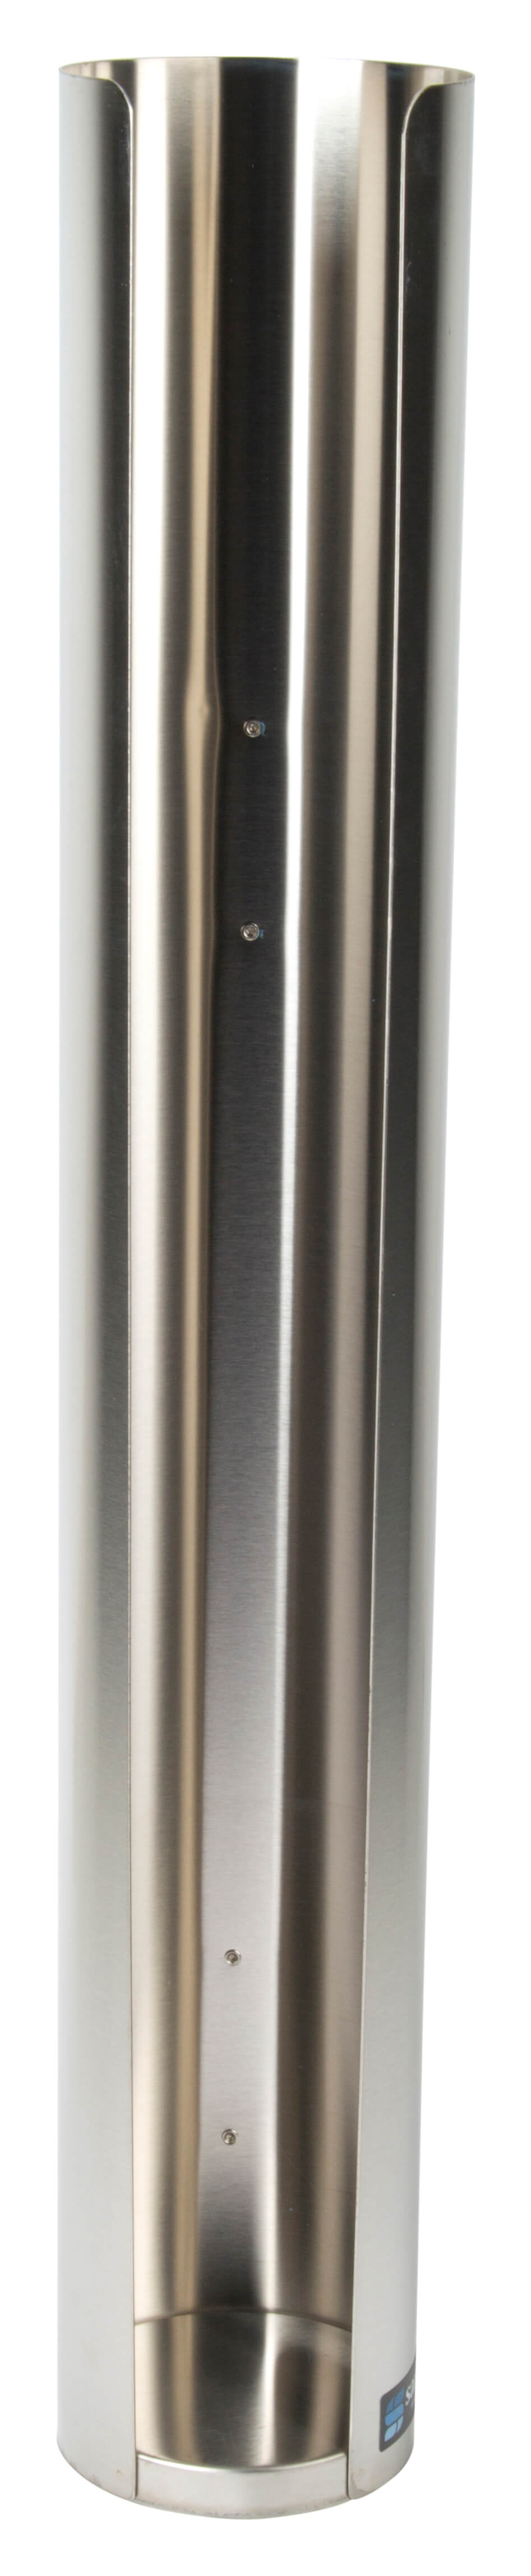 Lid Dispenser, stainless steel - 89mm